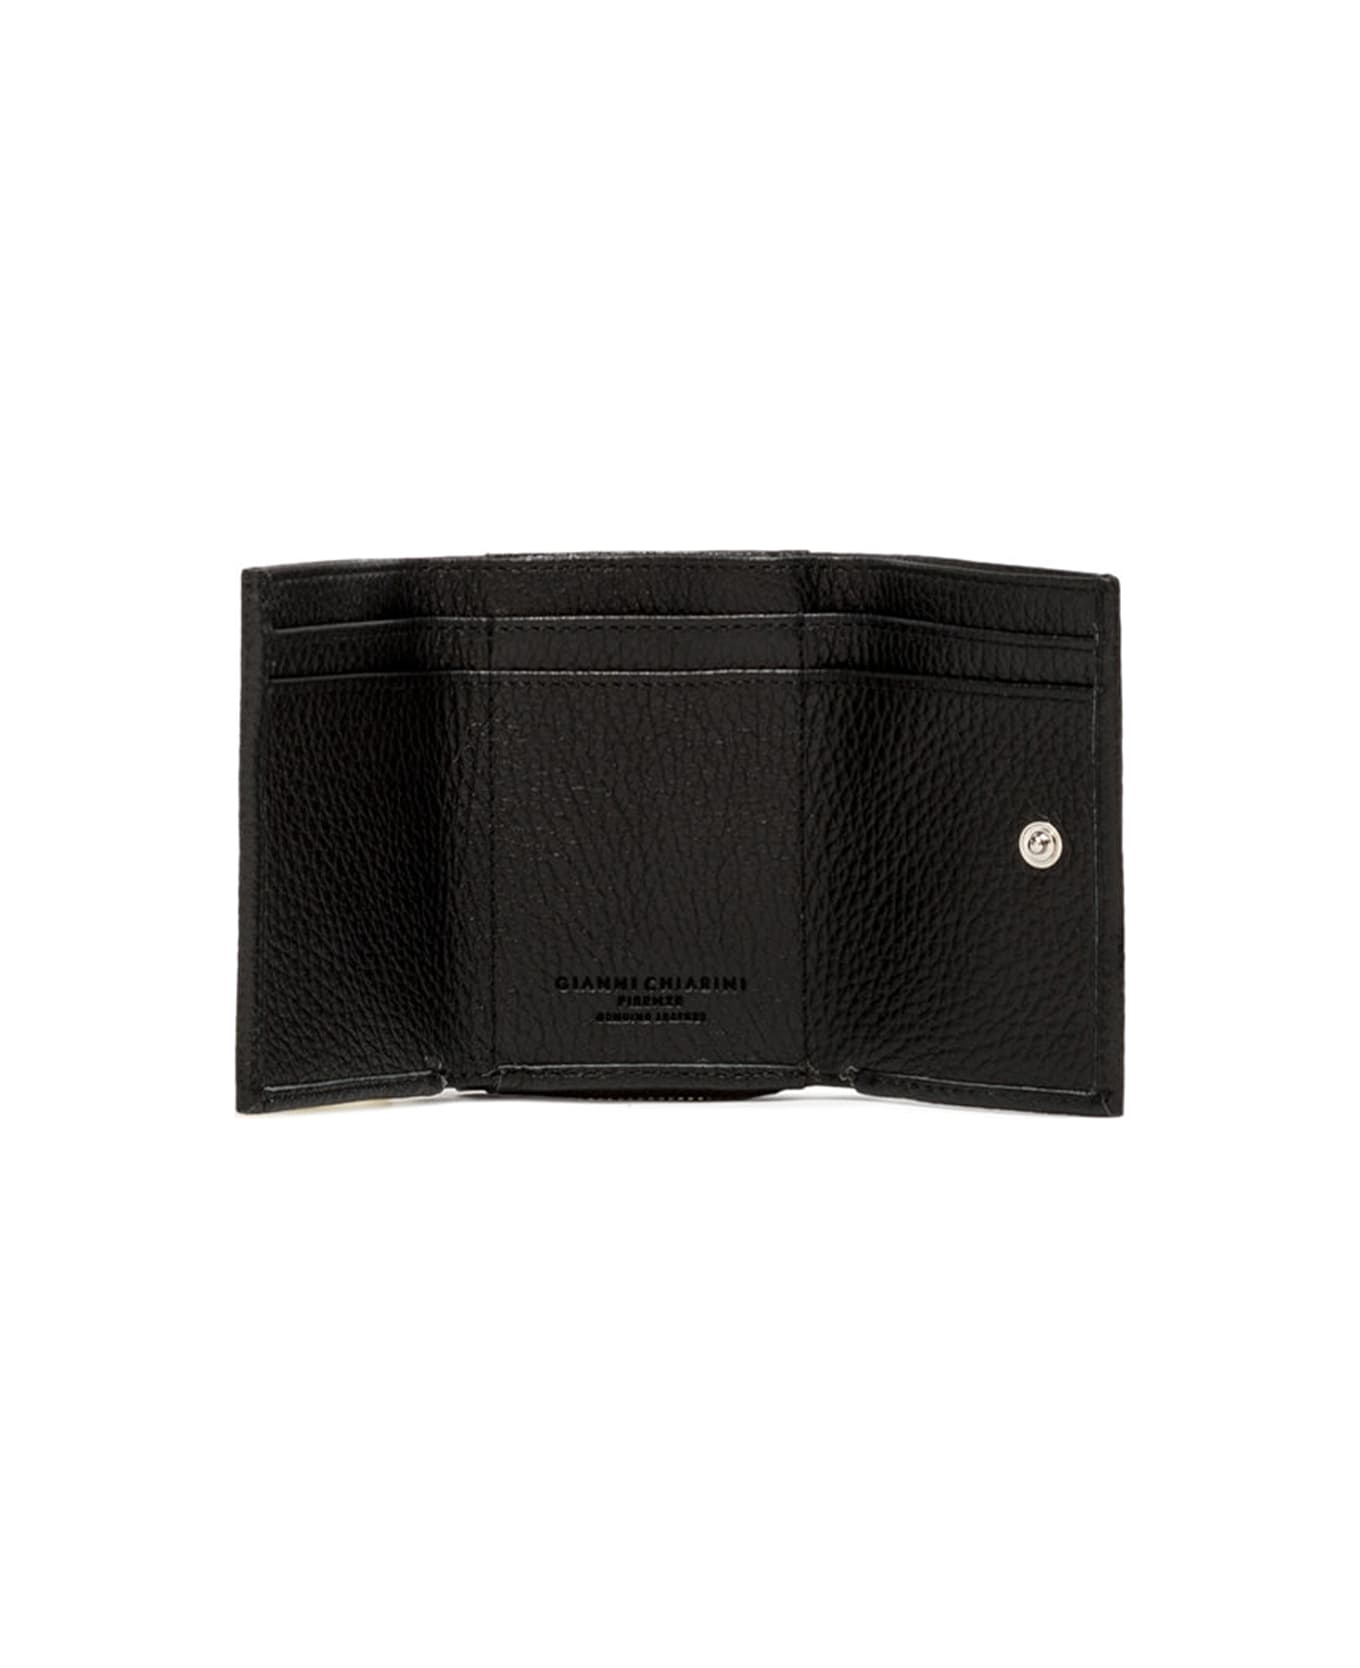 Gianni Chiarini Black Leather Trifold Wallet - NERO